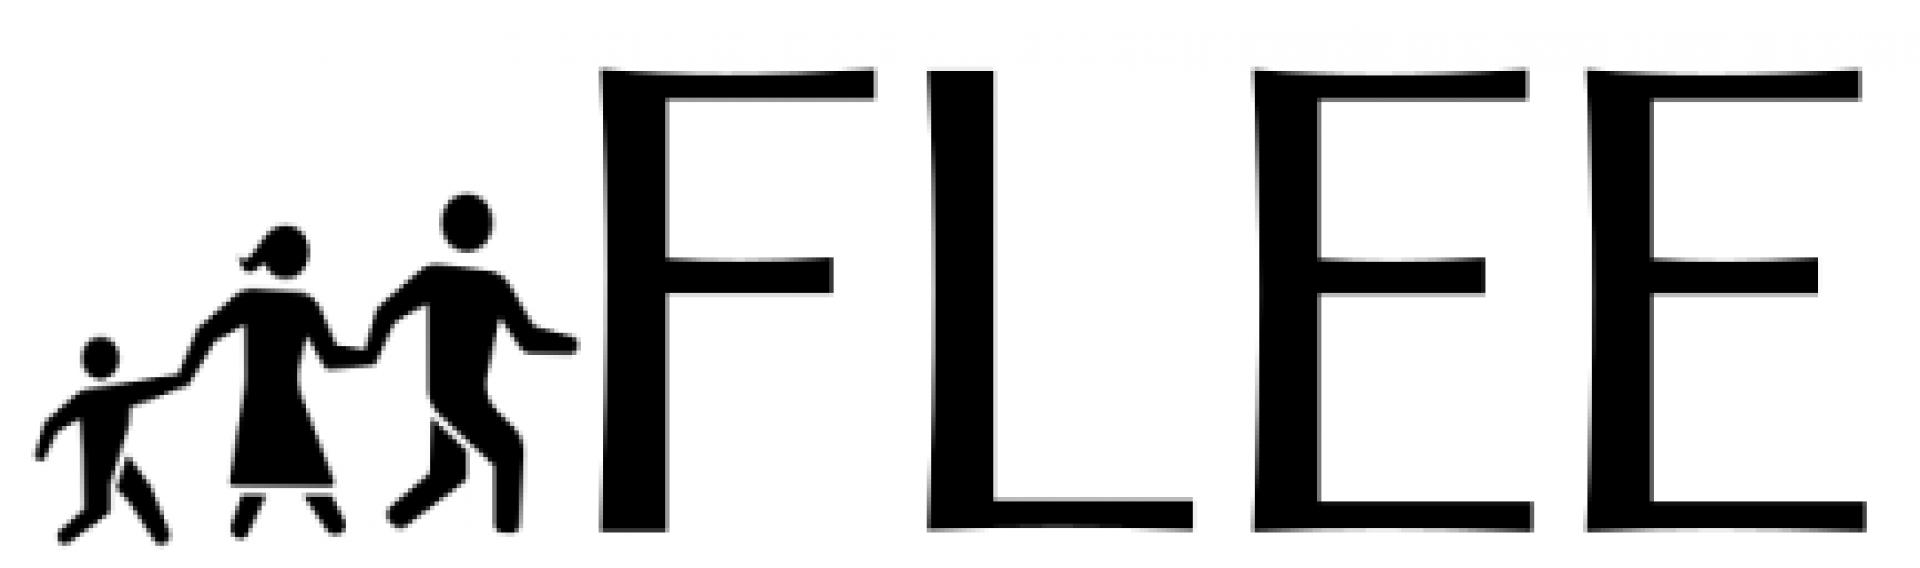 Flee logo